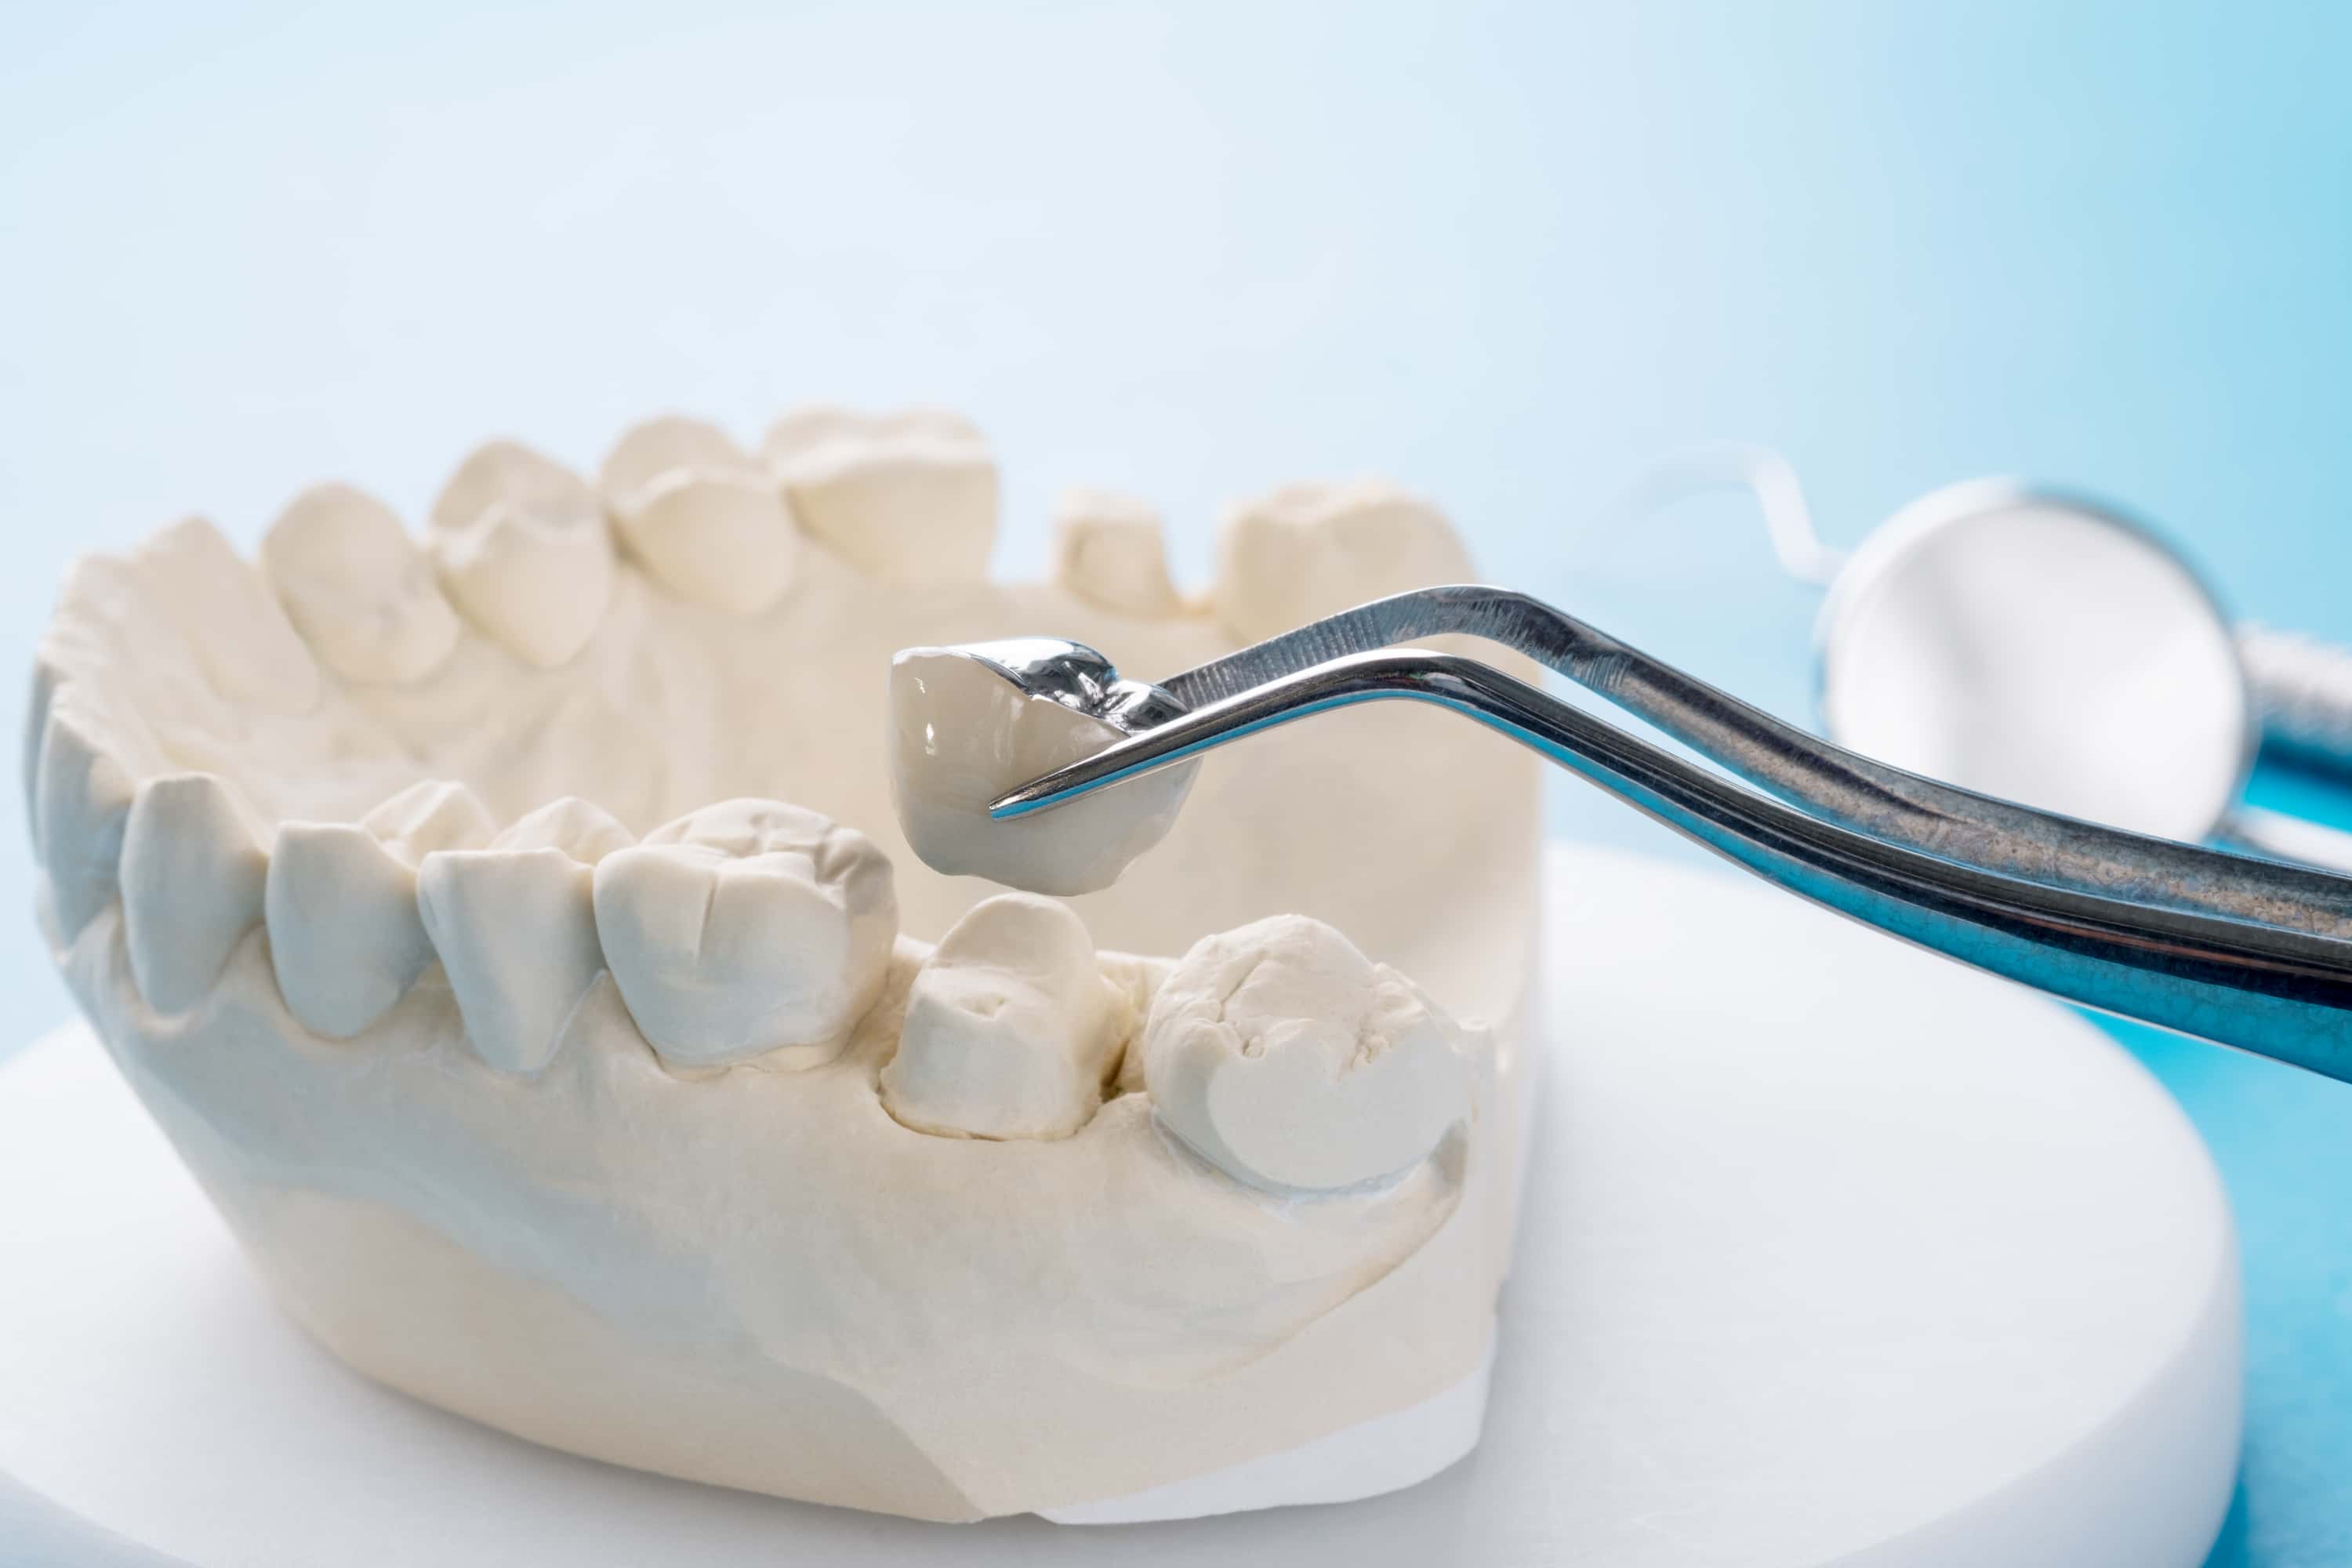 Turkiye dental crowns procedure